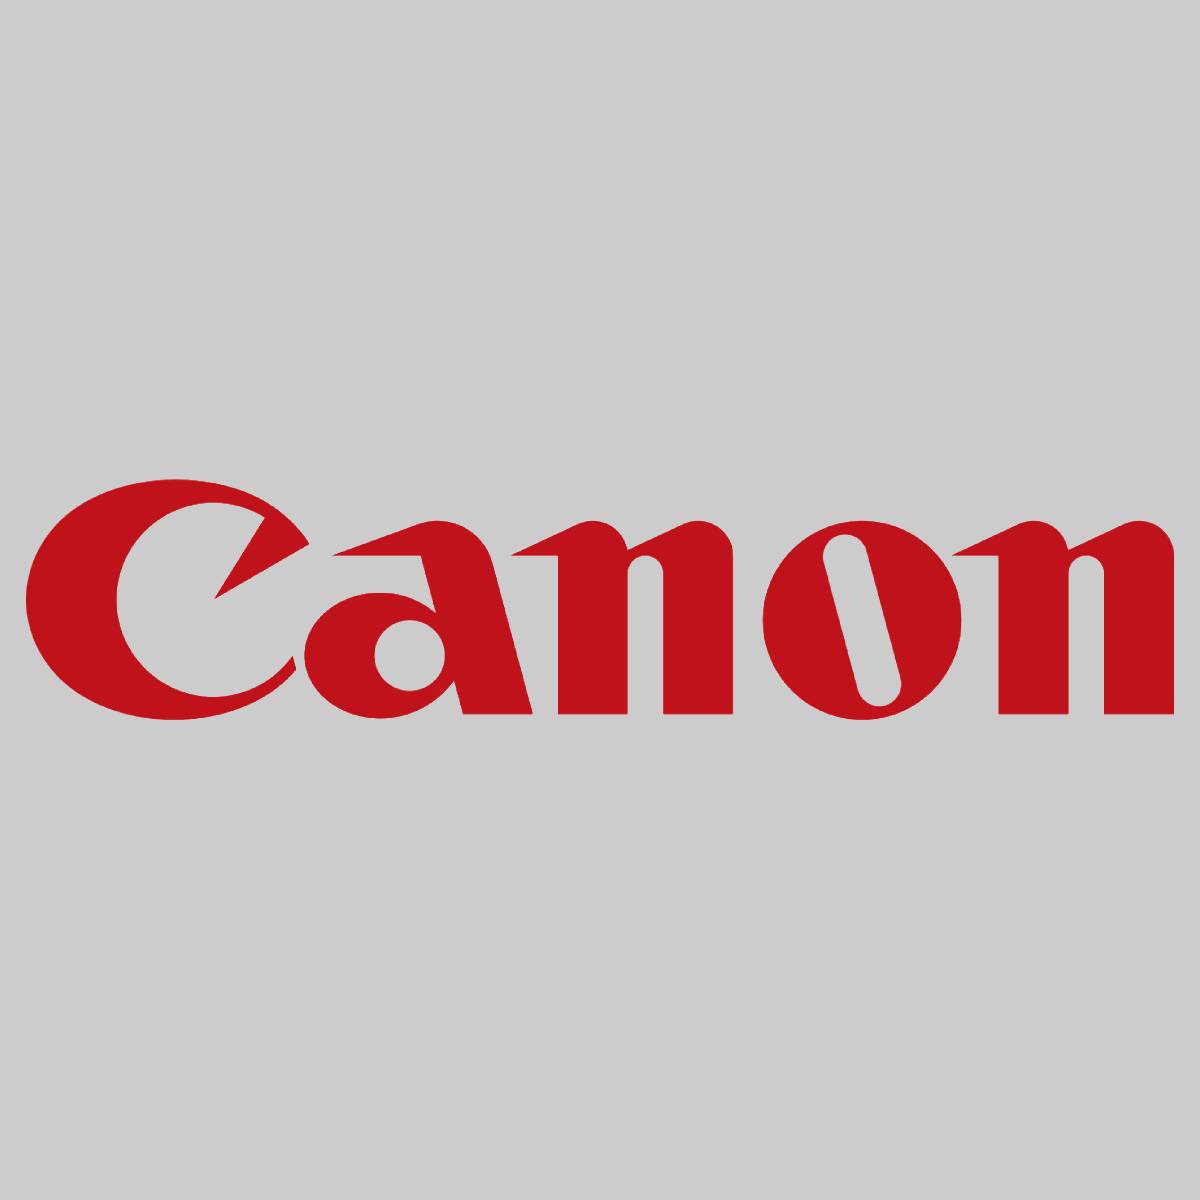 "Original Canon Hard Drive Disk FK4-1550-000 for imageRunner Advance 4525i NEW